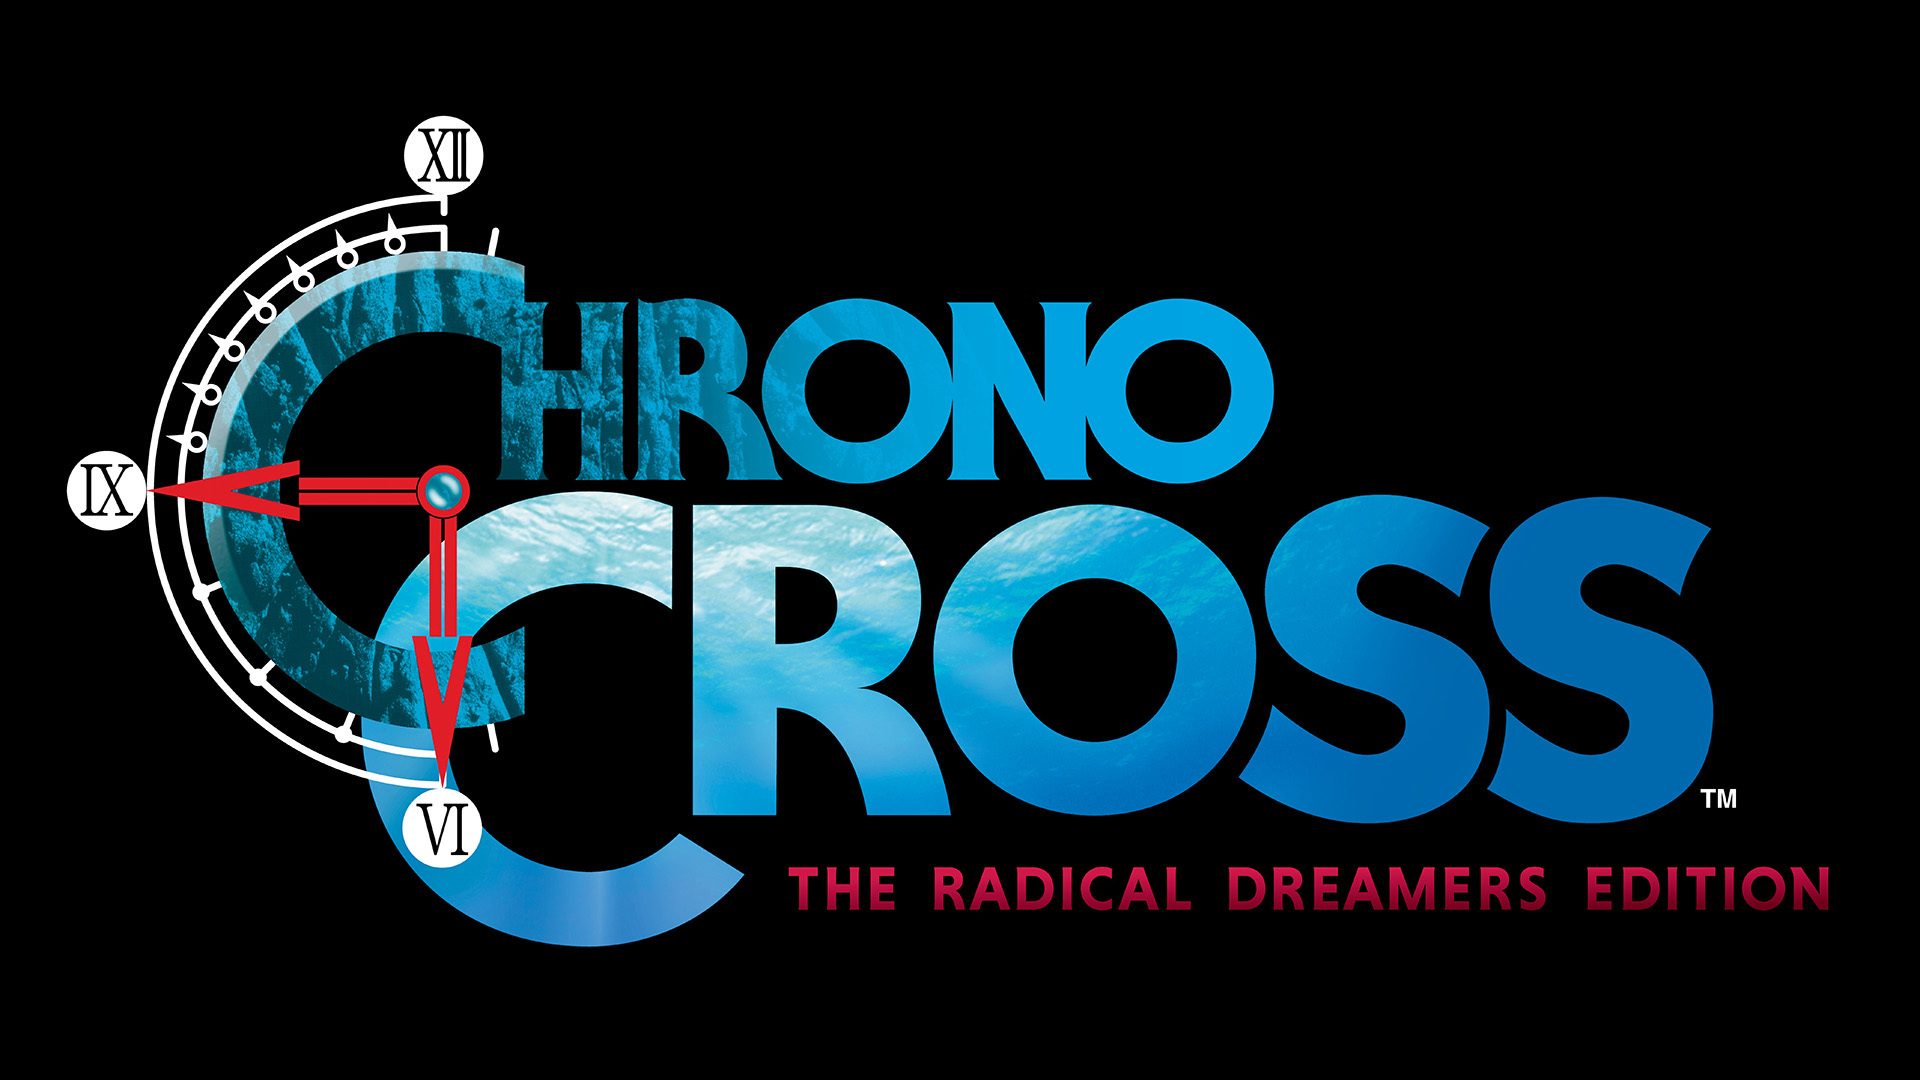 Chrono Cross Extras-Como conseguir todos os personagens 